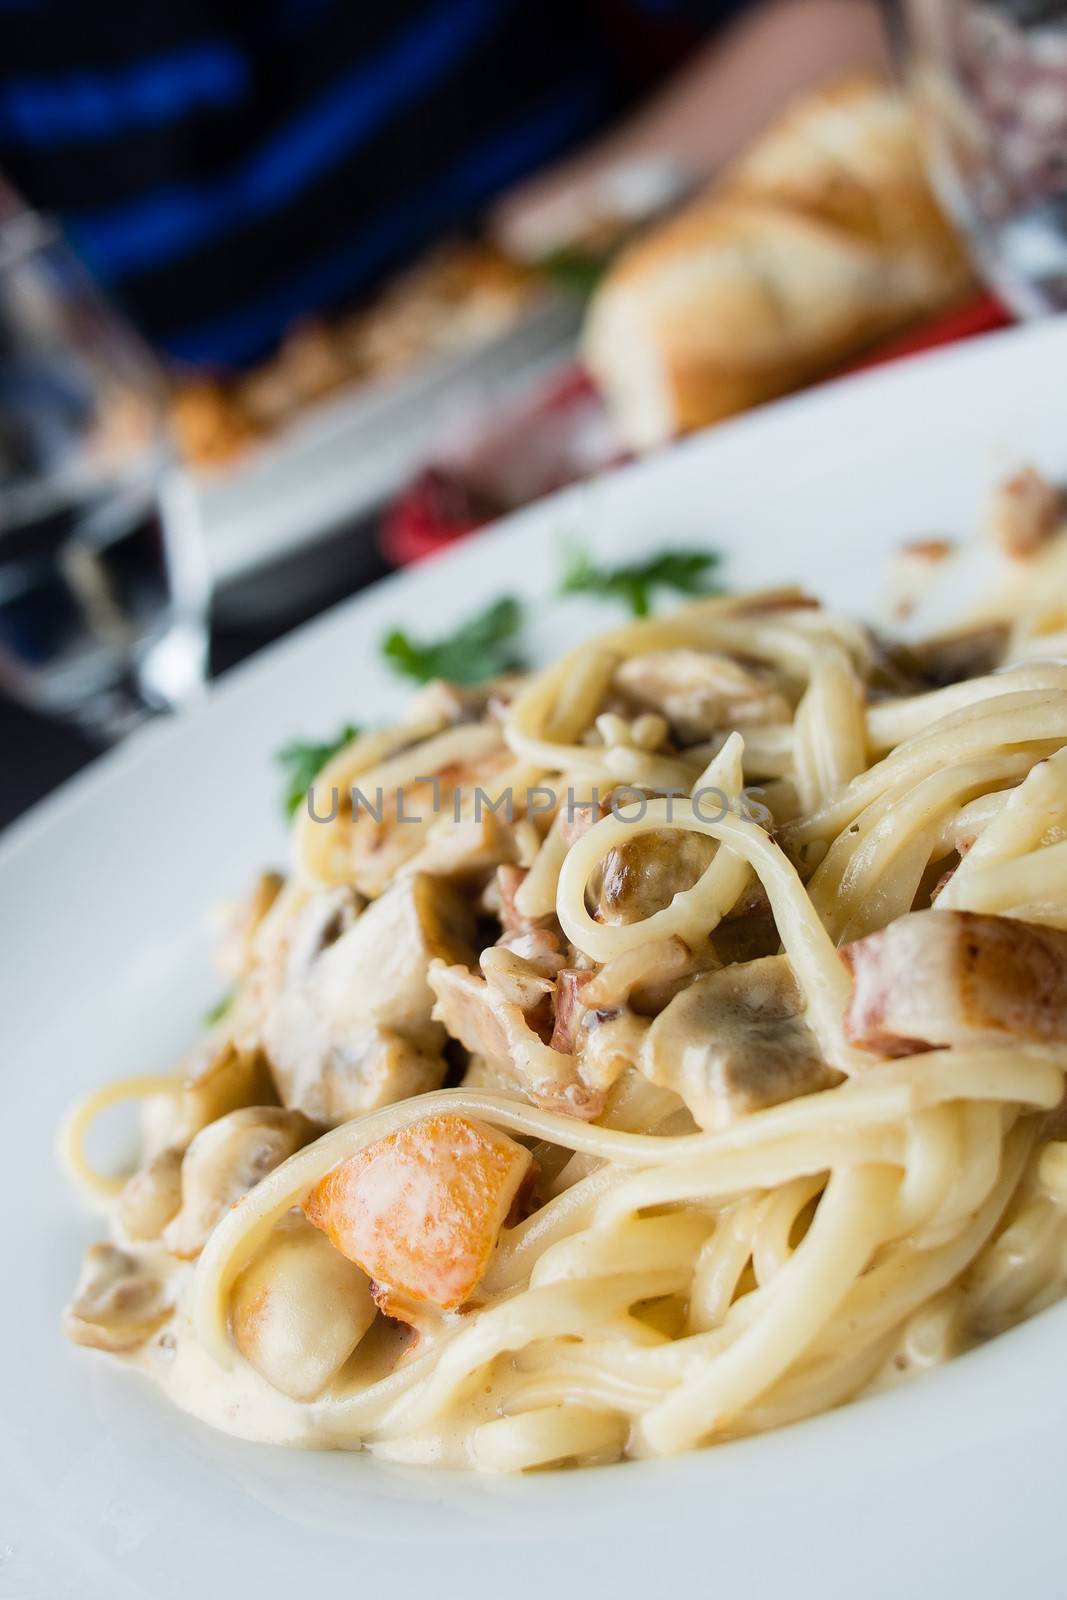 Traditional italian mushrooms pasta in a restaurant